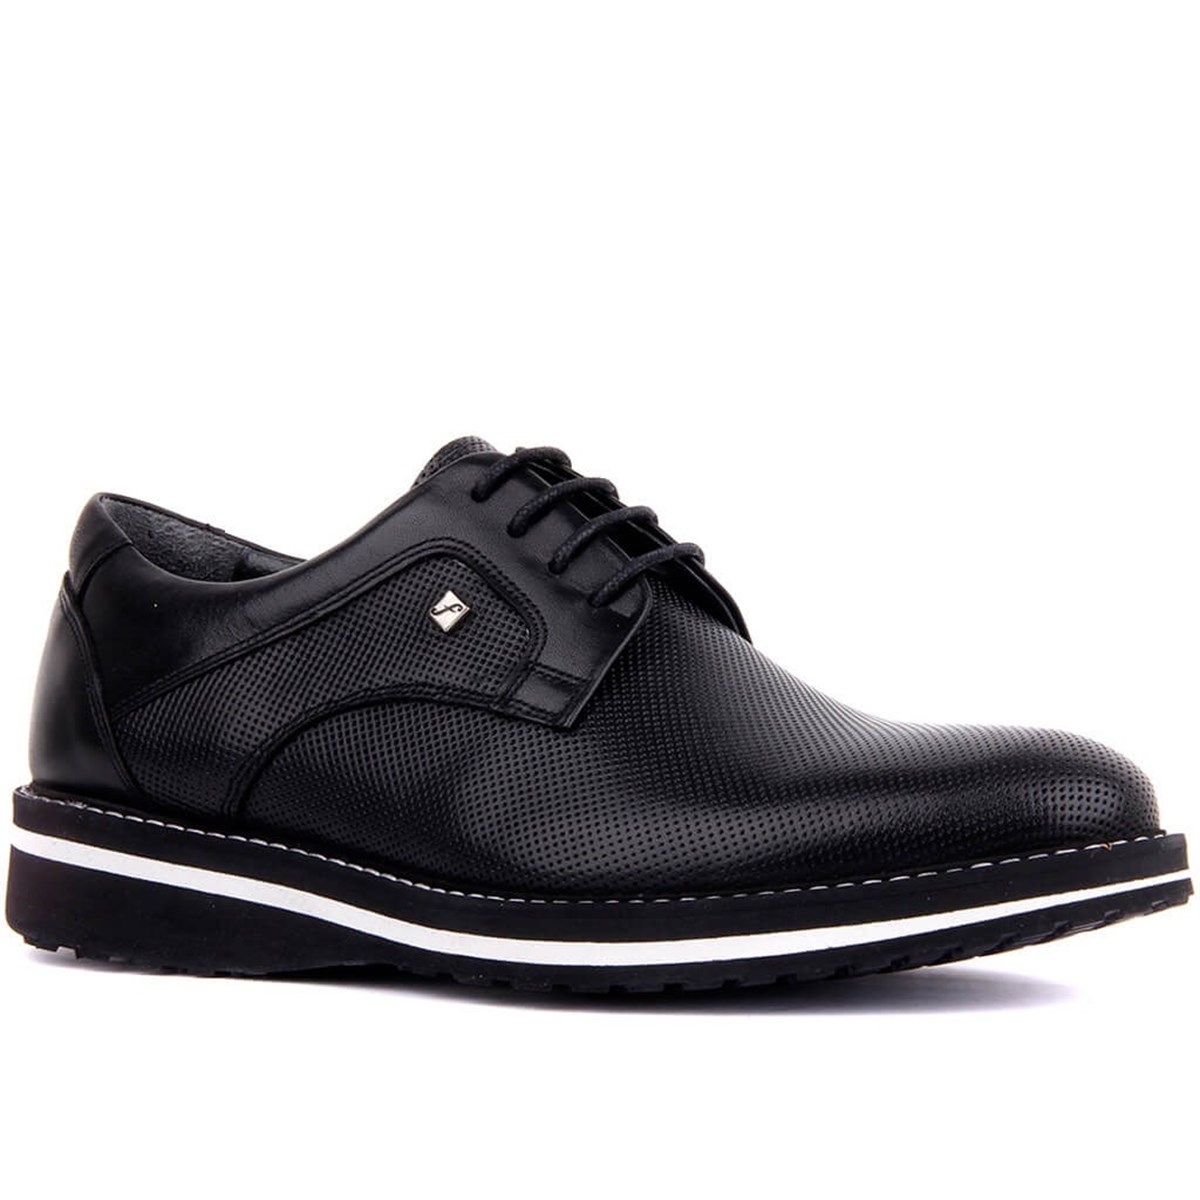 Erkek Siyah Hakiki Deri Bağcıklı Hafif Günlük Ayakkabı, Renk: Siyah, Beden: 39